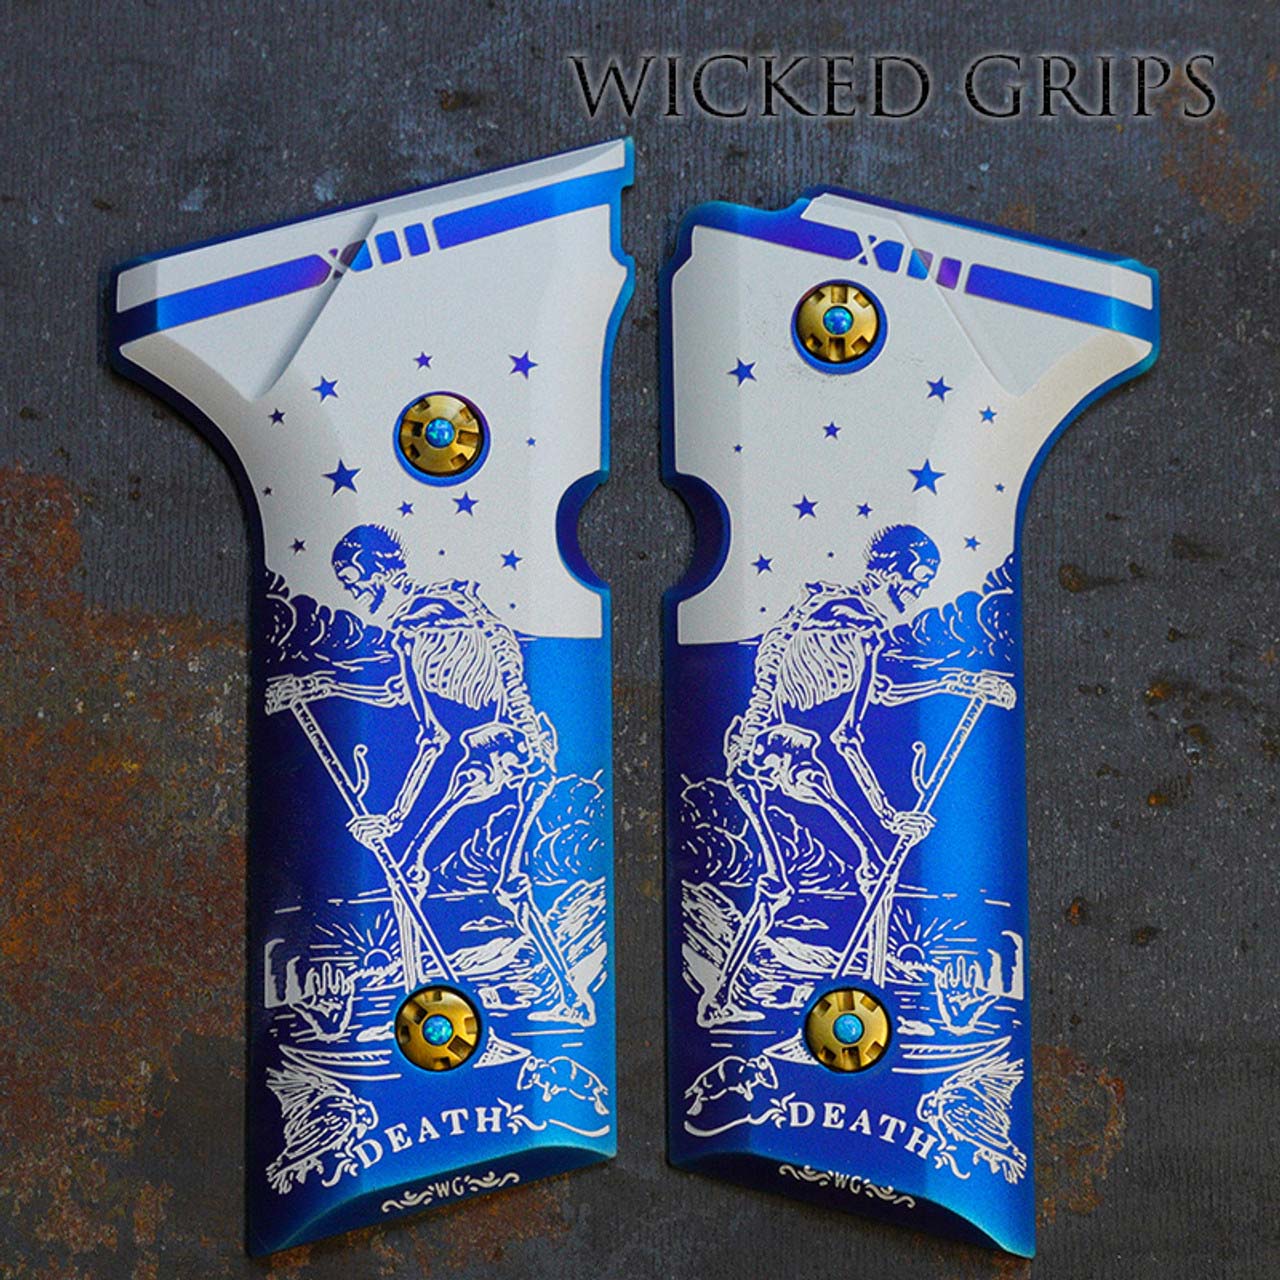 Beretta 92 grips with tarot card art